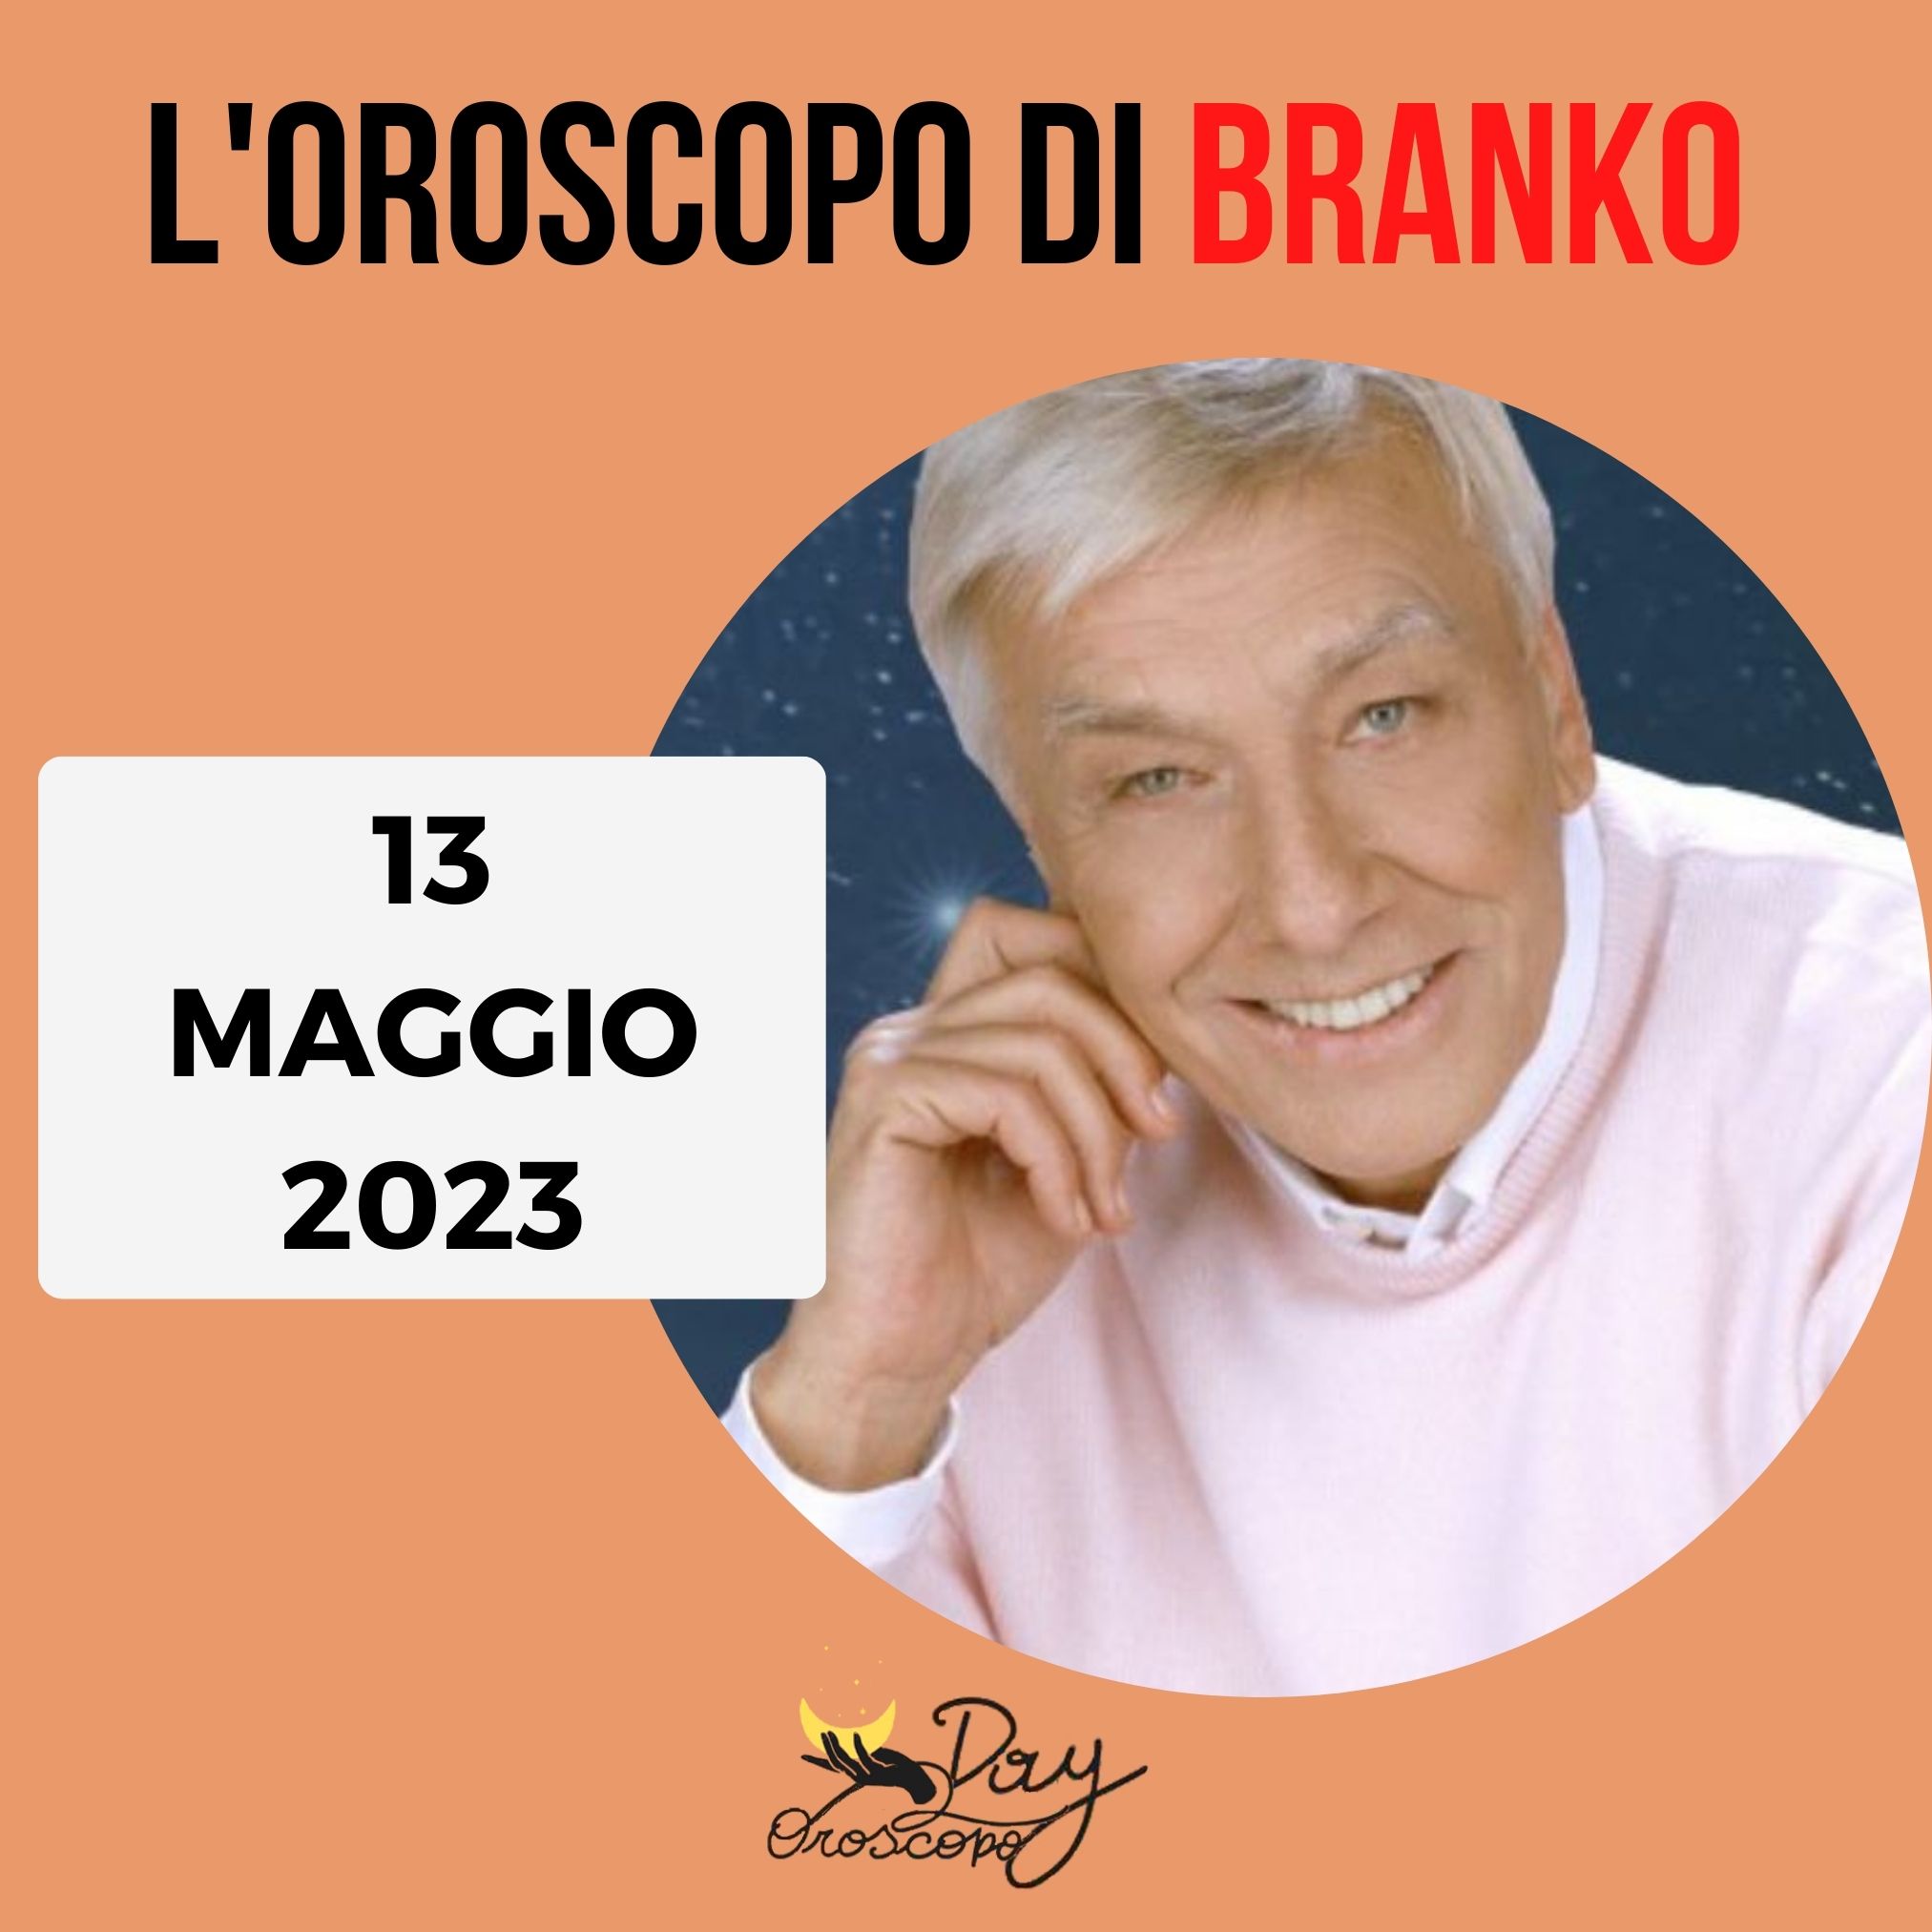 Oroscopo oggi domani Branko 13 maggio 2023